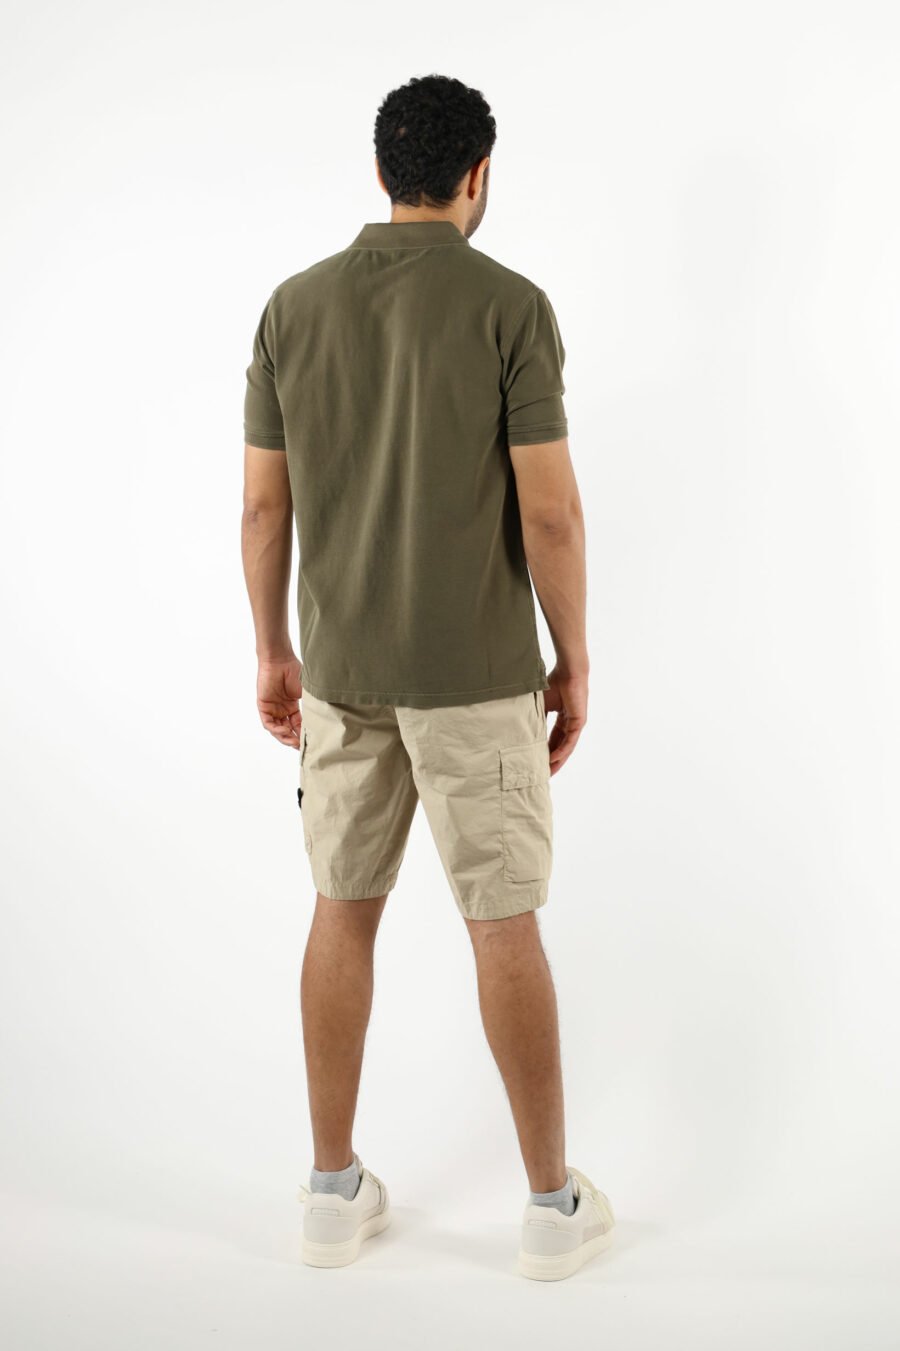 Pantalón corto color arena estilo cargo con logo parche brújula - 111373